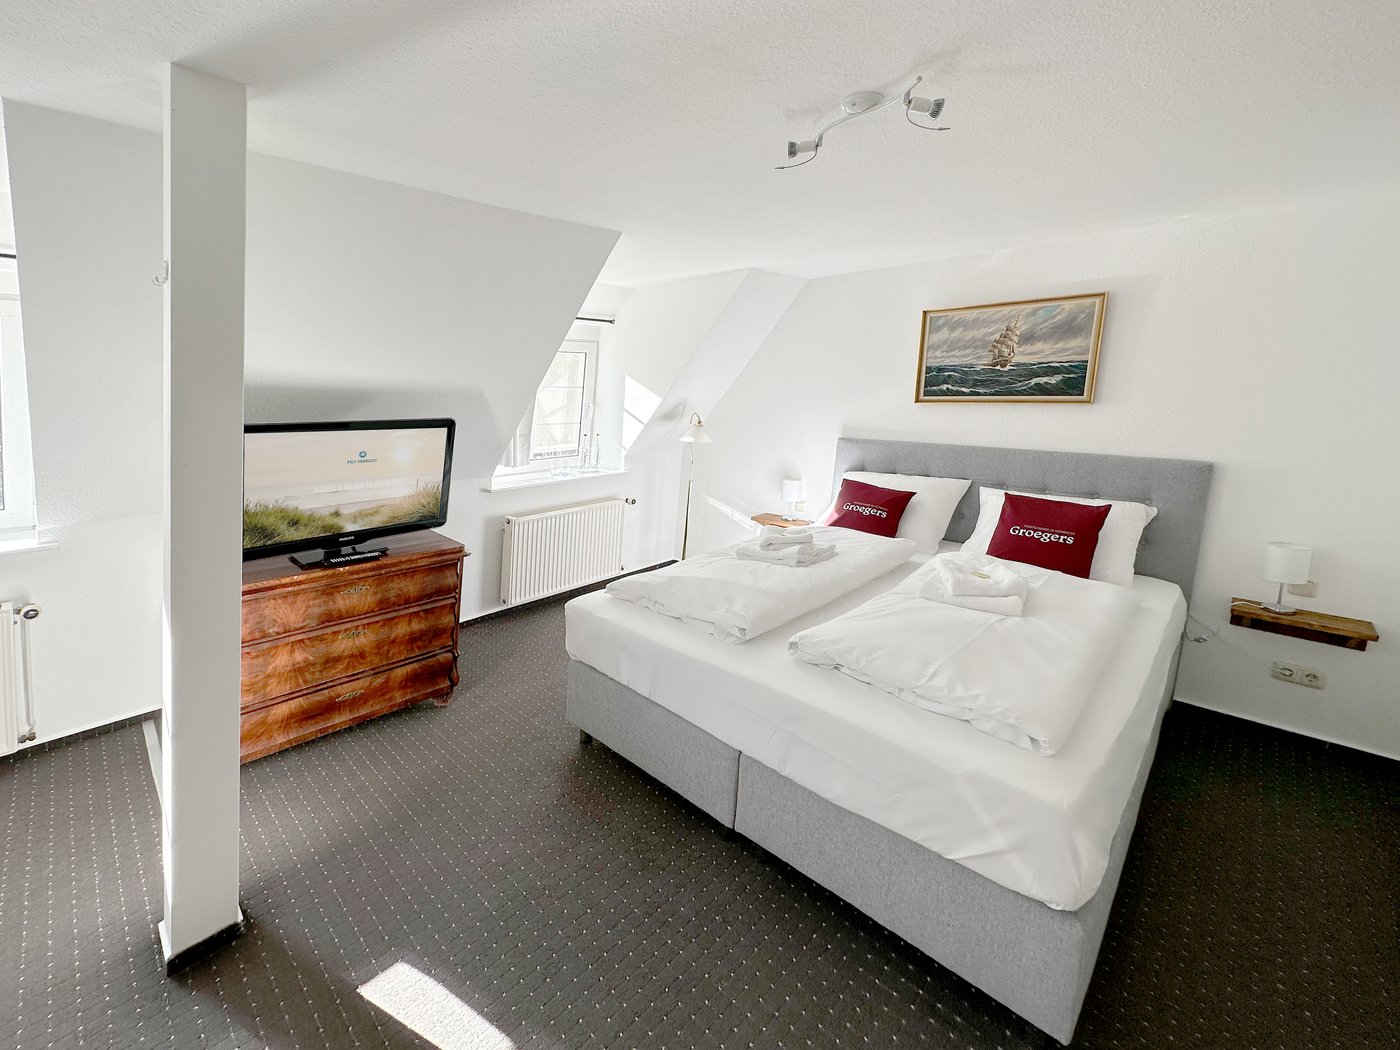 Groegers Ferienzimmer - Schlafraum mit Doppelbett